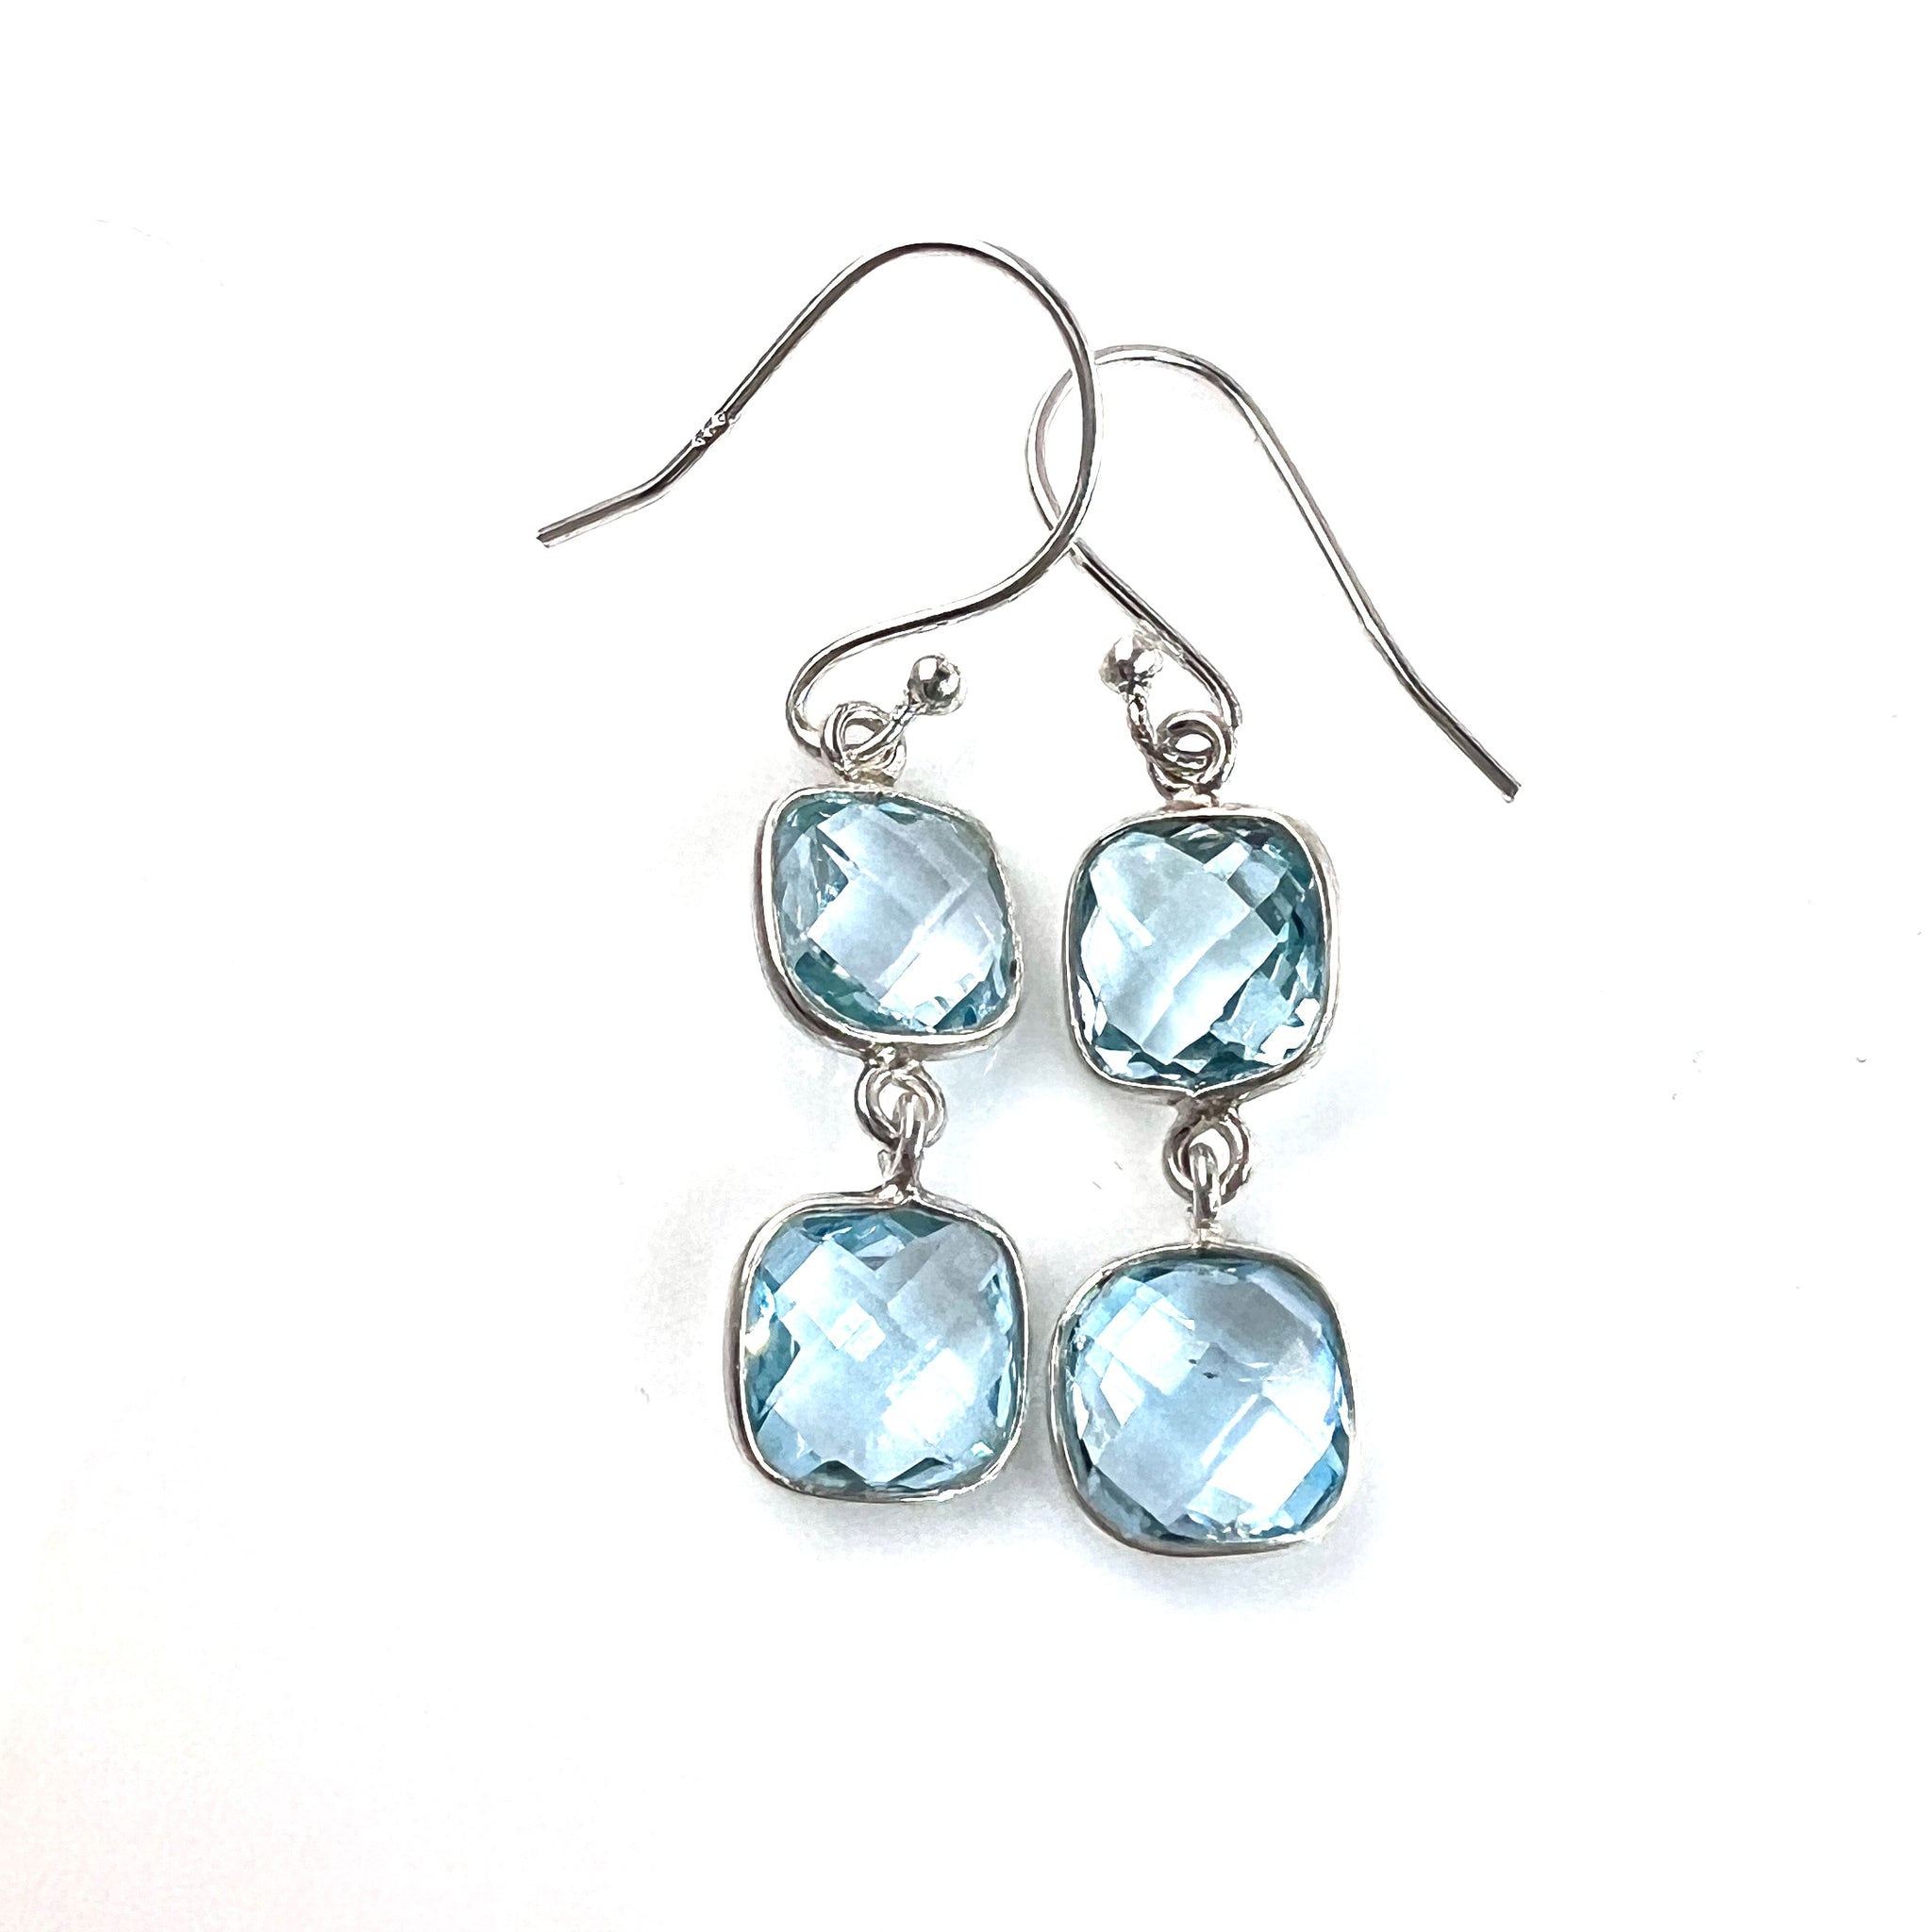 Blue Topaz Sterling Silver Earrings - Keja Designs Jewelry